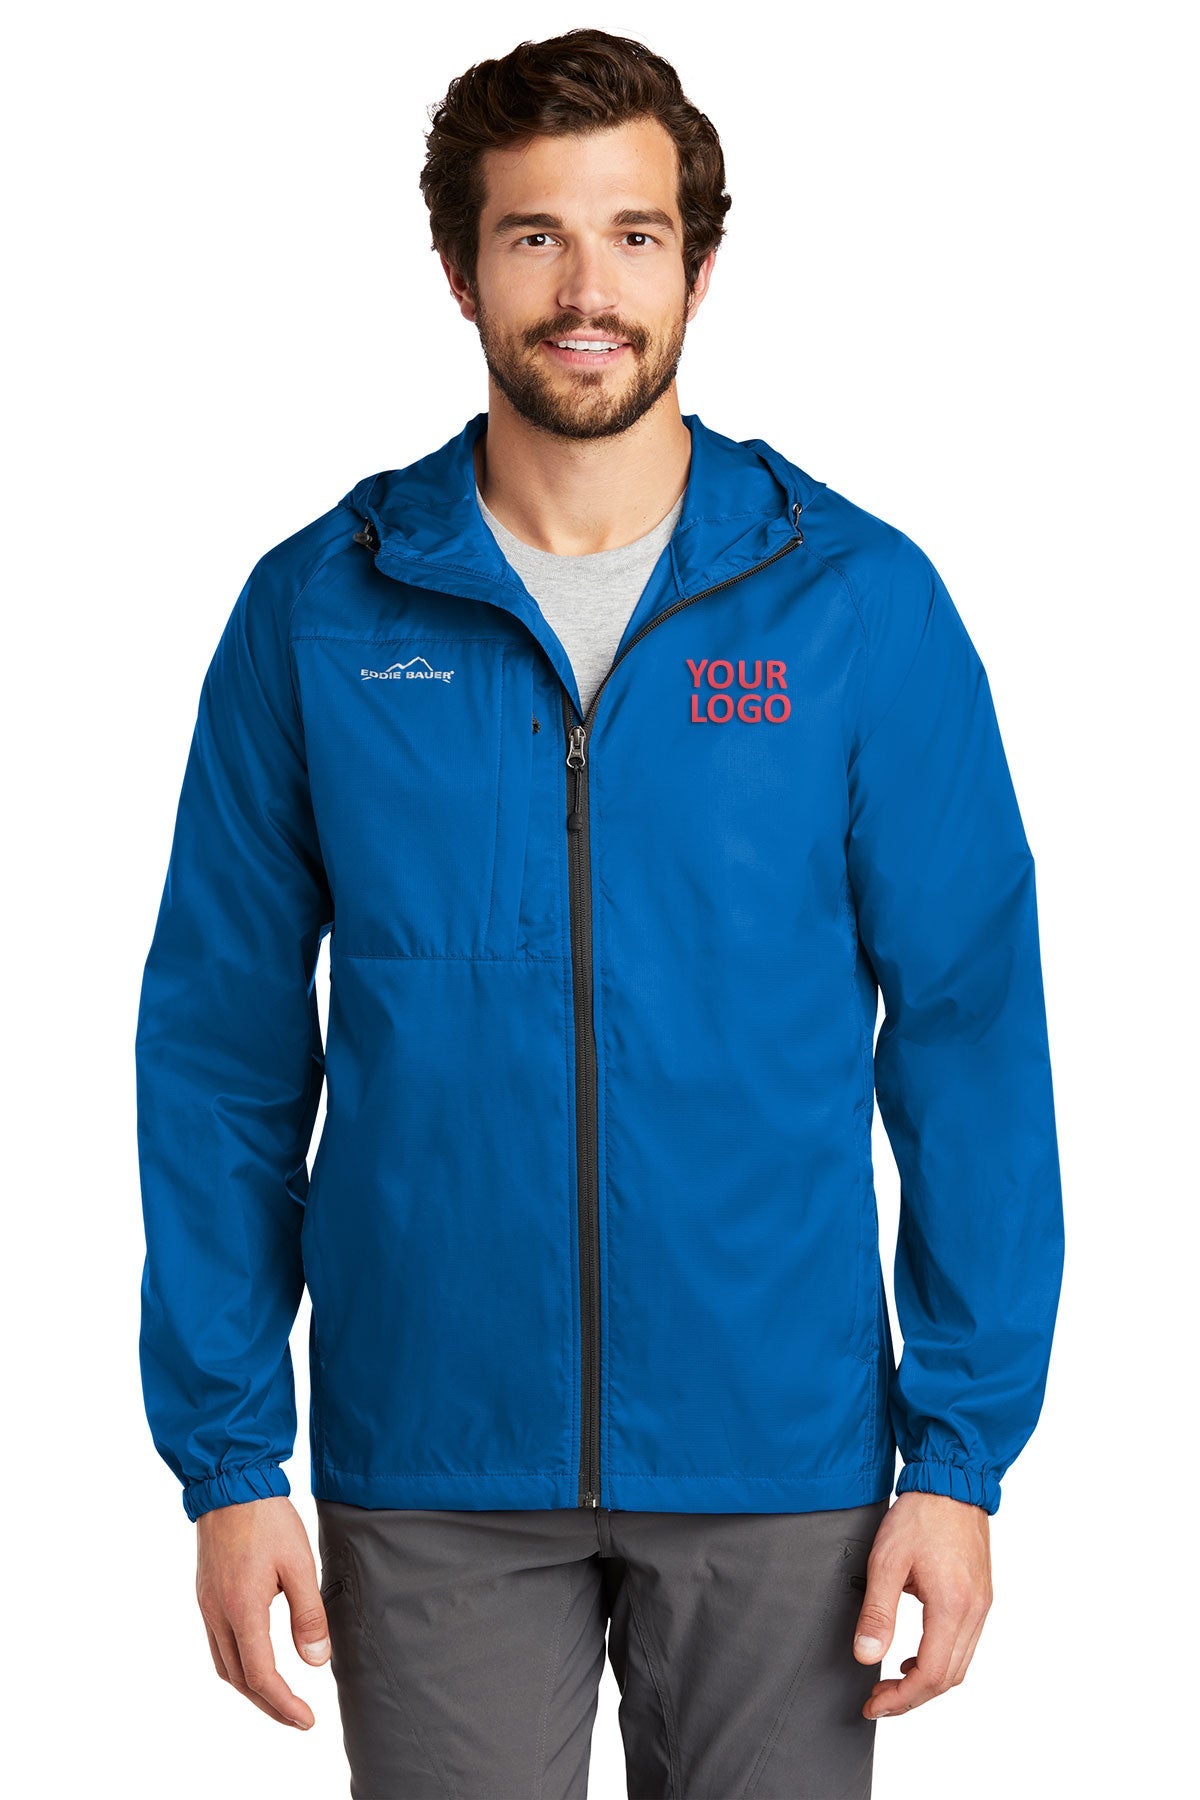 Eddie Bauer Brilliant Blue EB500 custom logo jackets